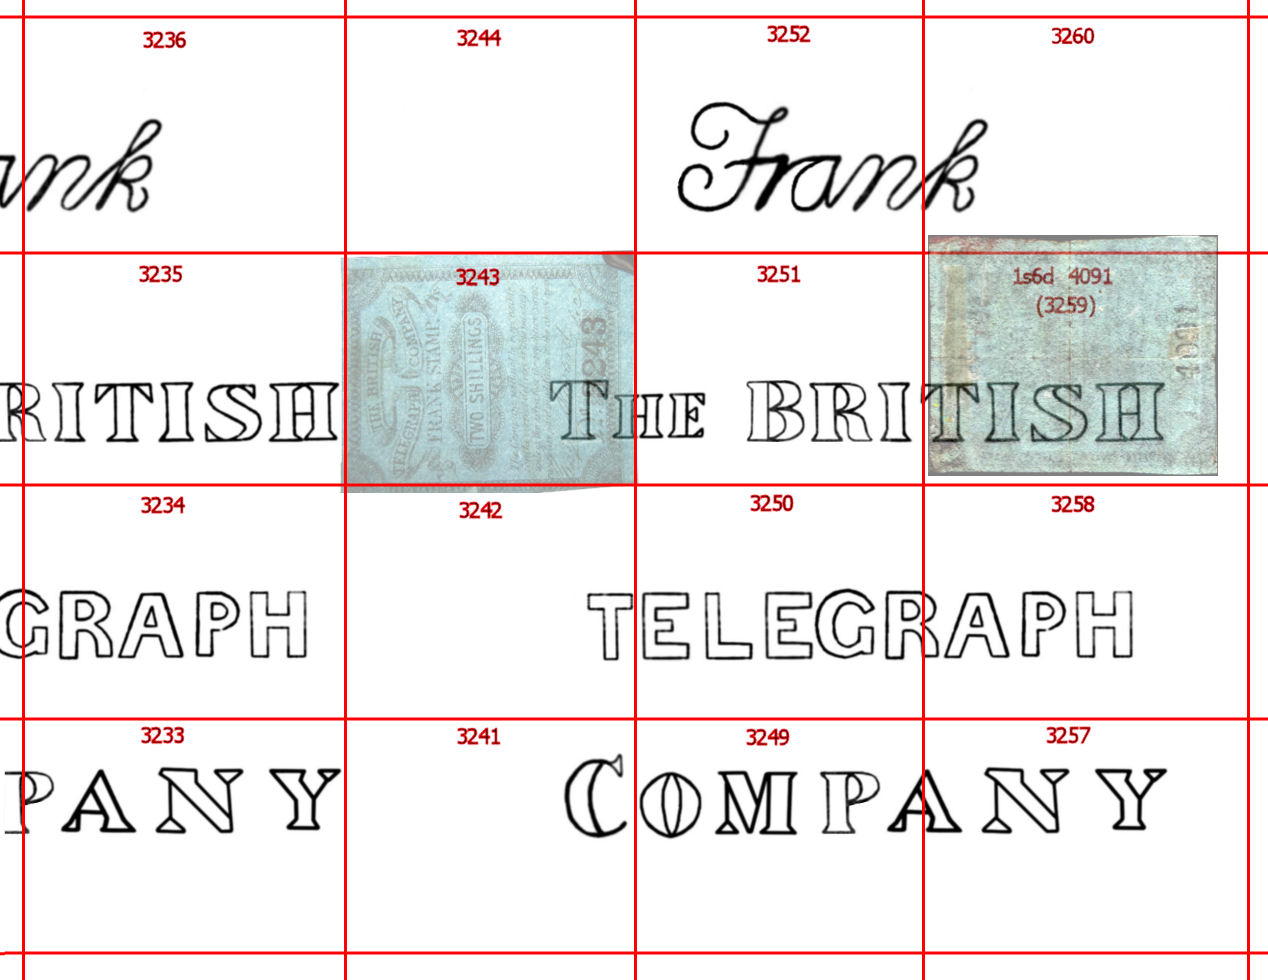 British Telegraph Co. watermark